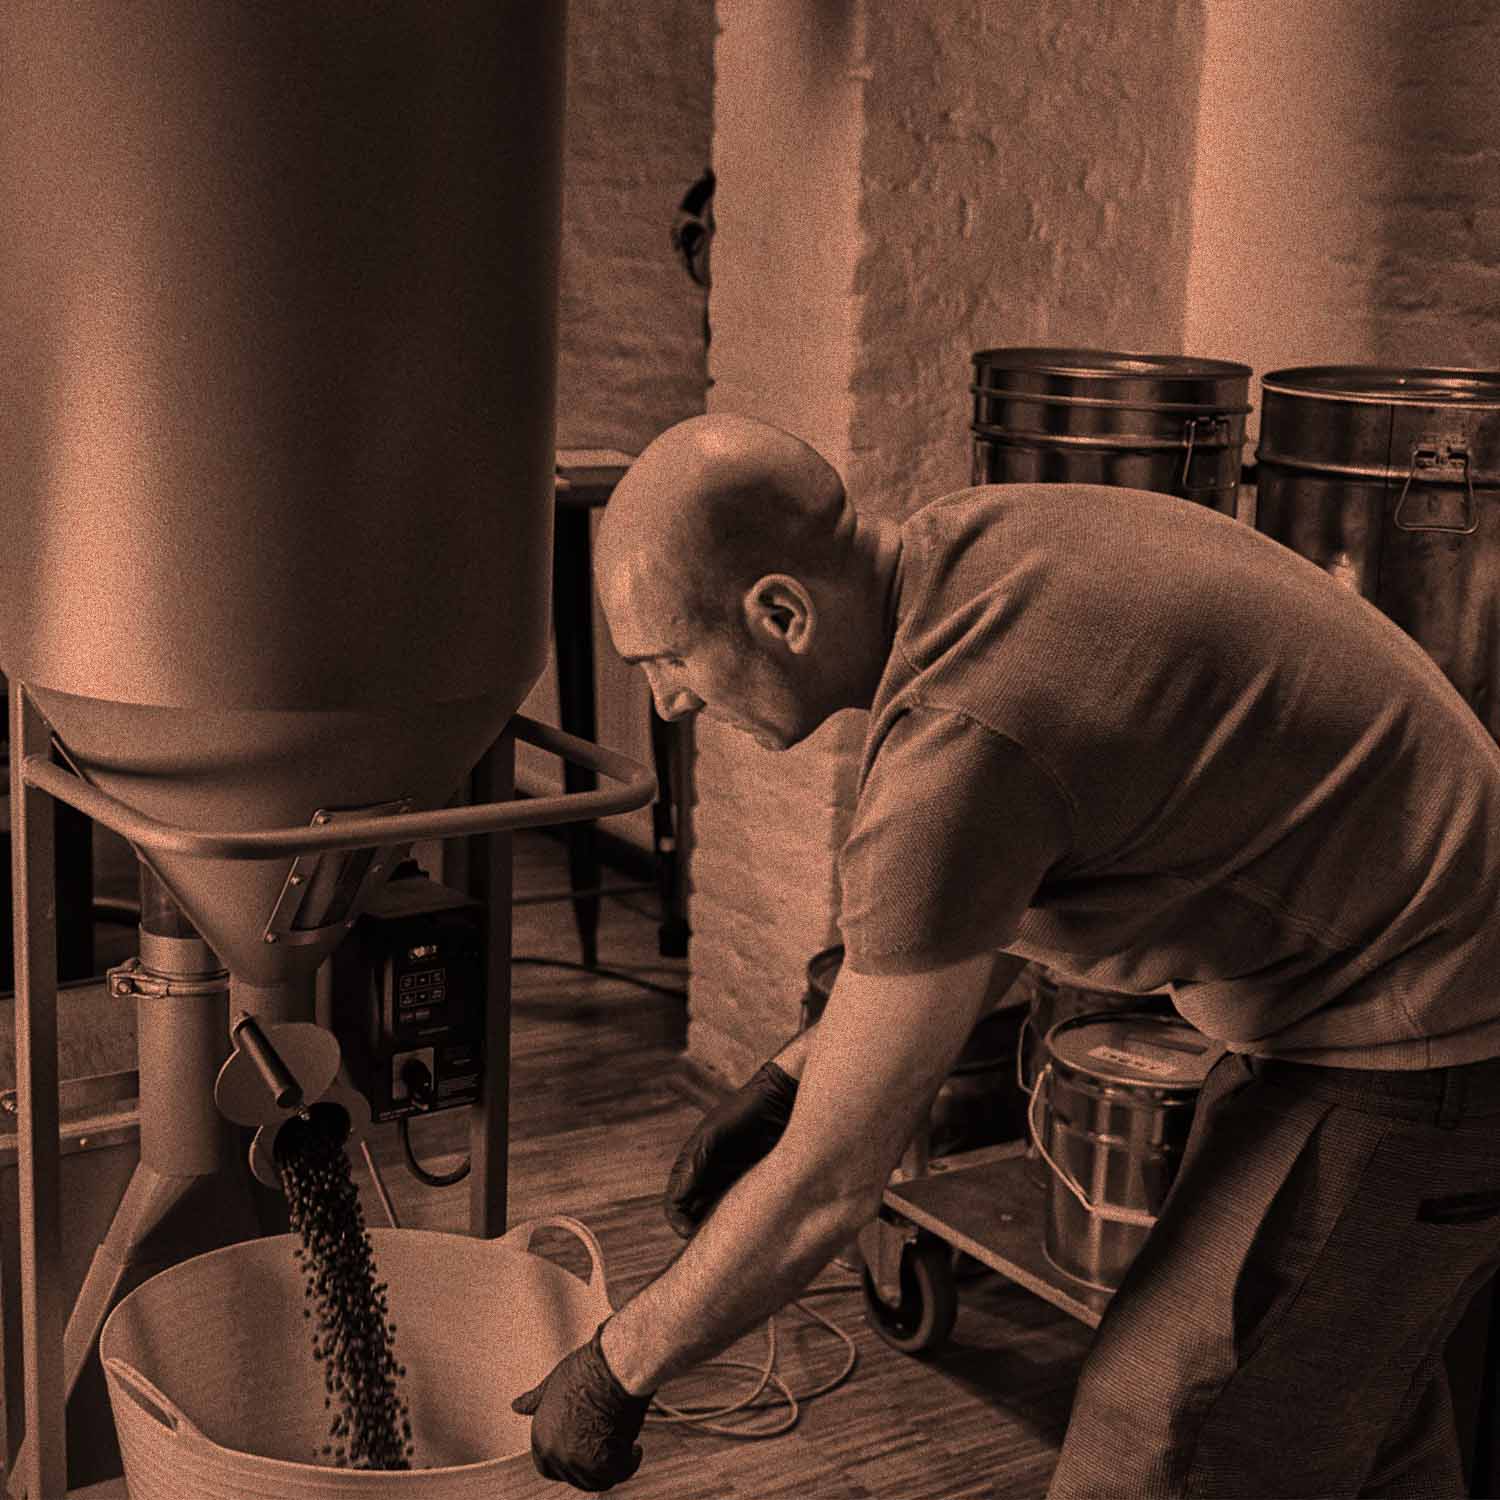 Das Bild zeigt Roberto Cascone, den Inhaber von AMORI Coffee, beim Entsteinen von Kaffeebohnen. Die Kammer ist geöffnet und die Kaffeebohnen fallen in einen Korb.